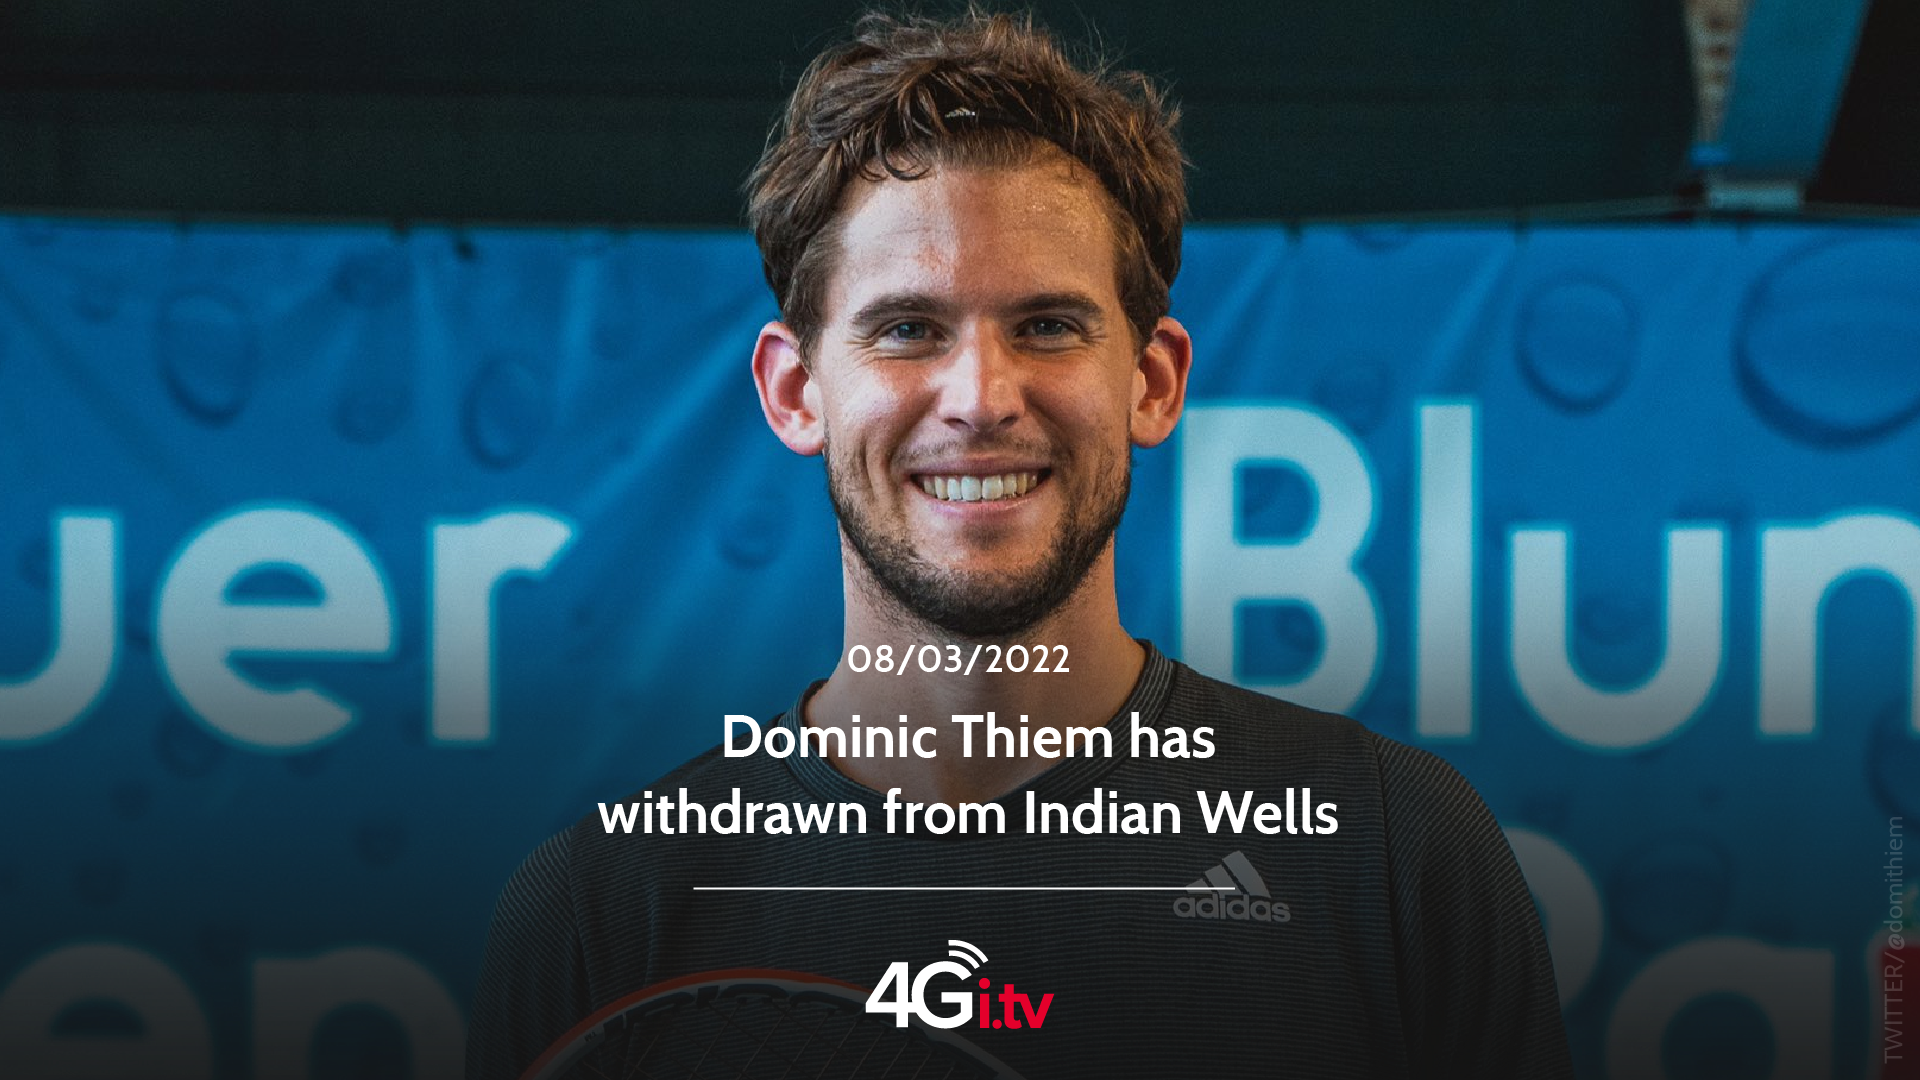 Lesen Sie mehr über den Artikel Dominic Thiem has withdrawn from Indian Wells